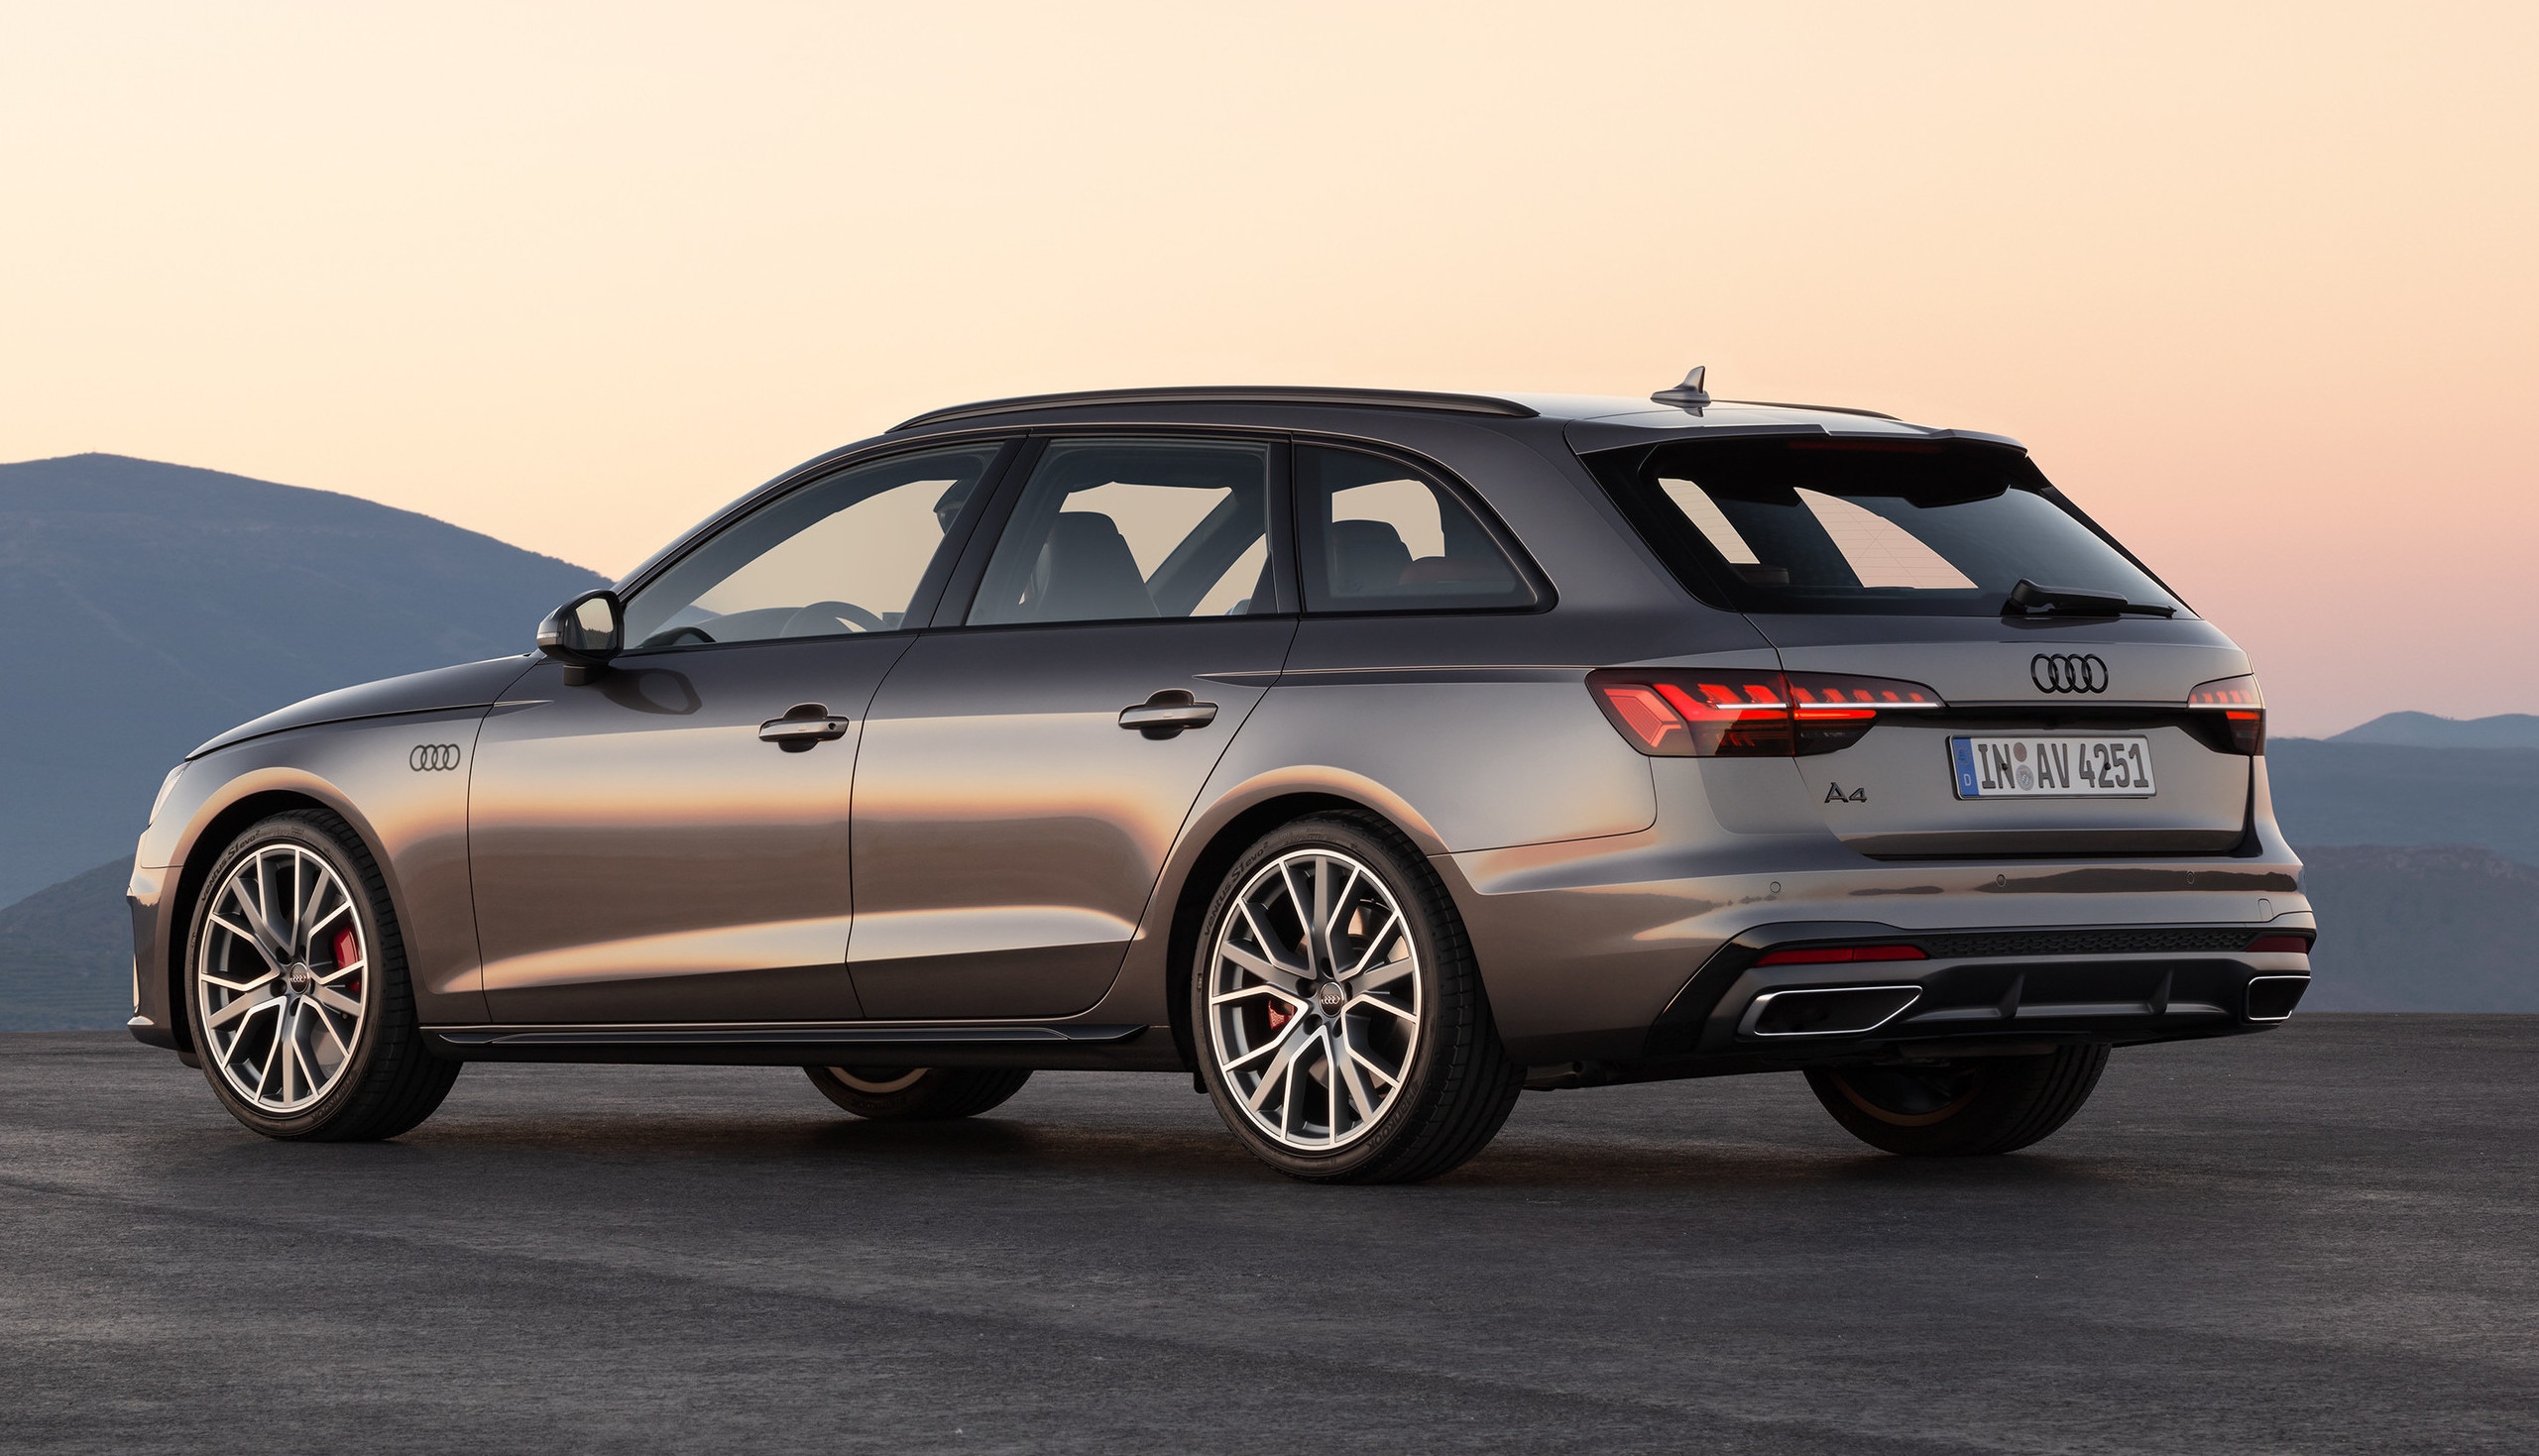 Audi lanceert - alweer - een nieuwe A4 Autobahn